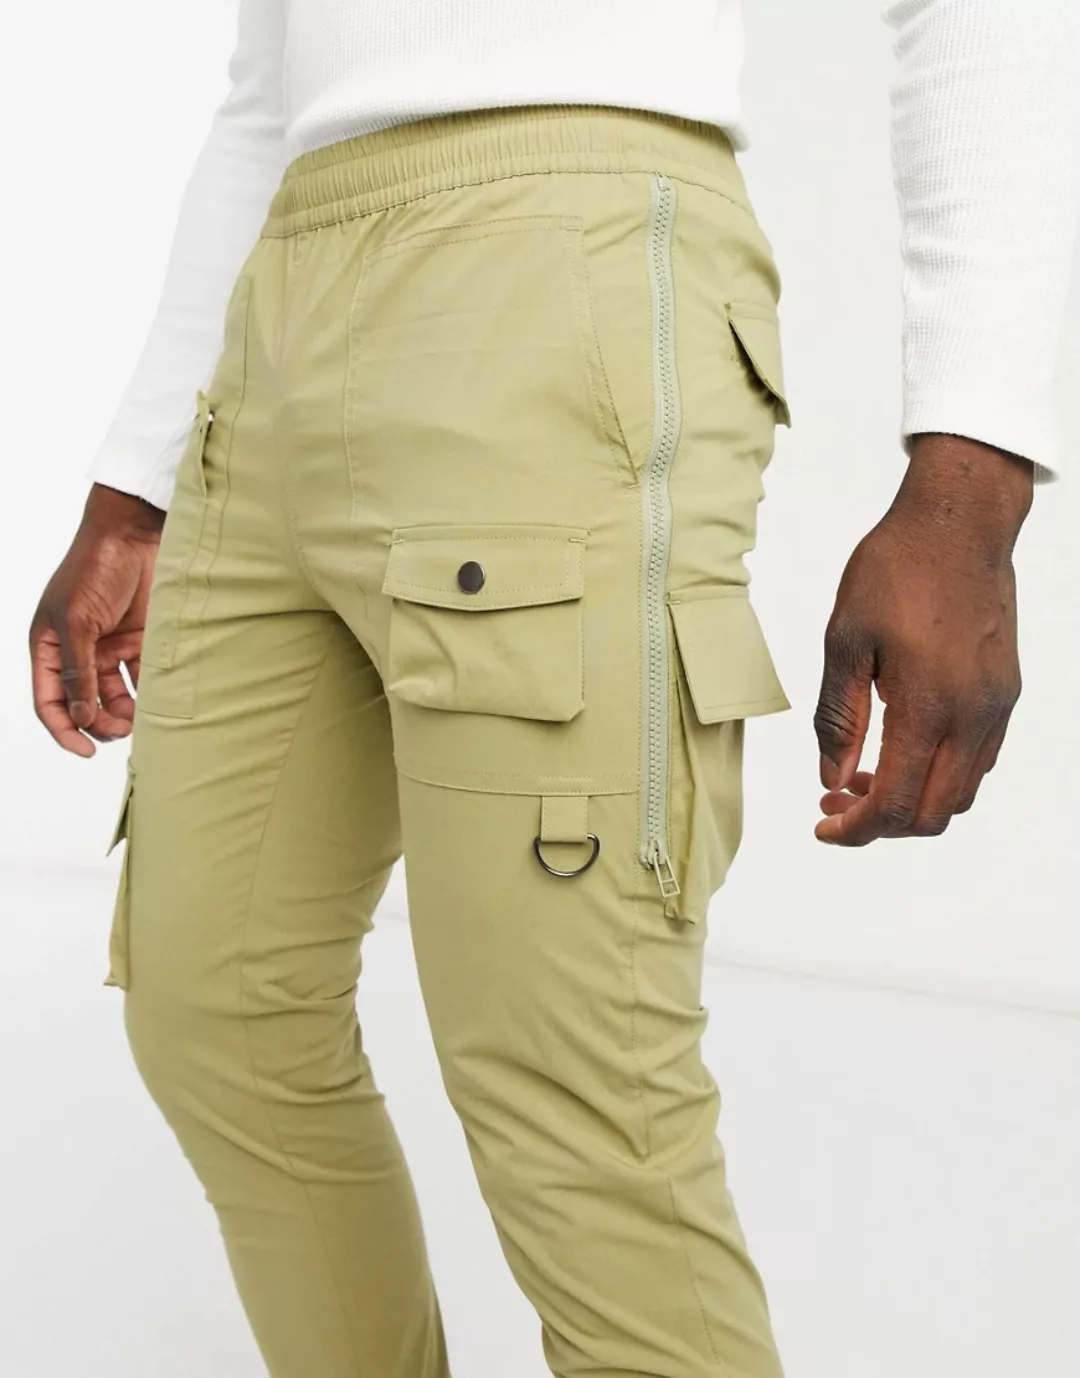 ASOS DESIGN – Enge Hose mit Seitenreißverschluss in hellem Khaki-Grün günstig online kaufen